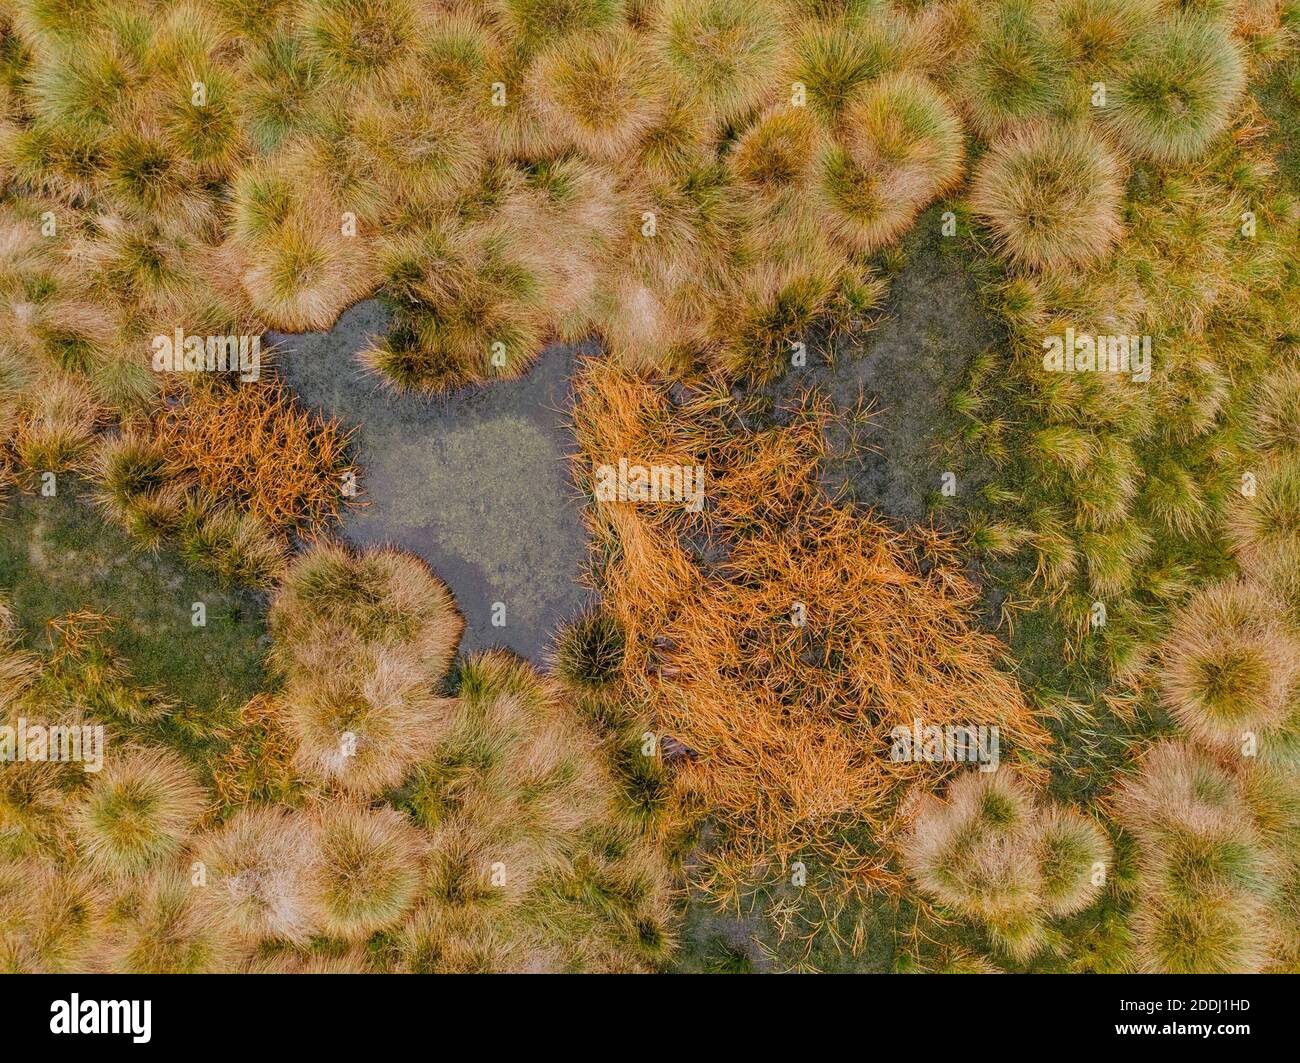 Luftaufnahme von Torfmoor Muster mit See, grün orange Moose im Sumava Nationalpark, Tschechische republik.Bunte Luftlandschaft.Draufsicht Drohne Aufnahme von Stockfoto